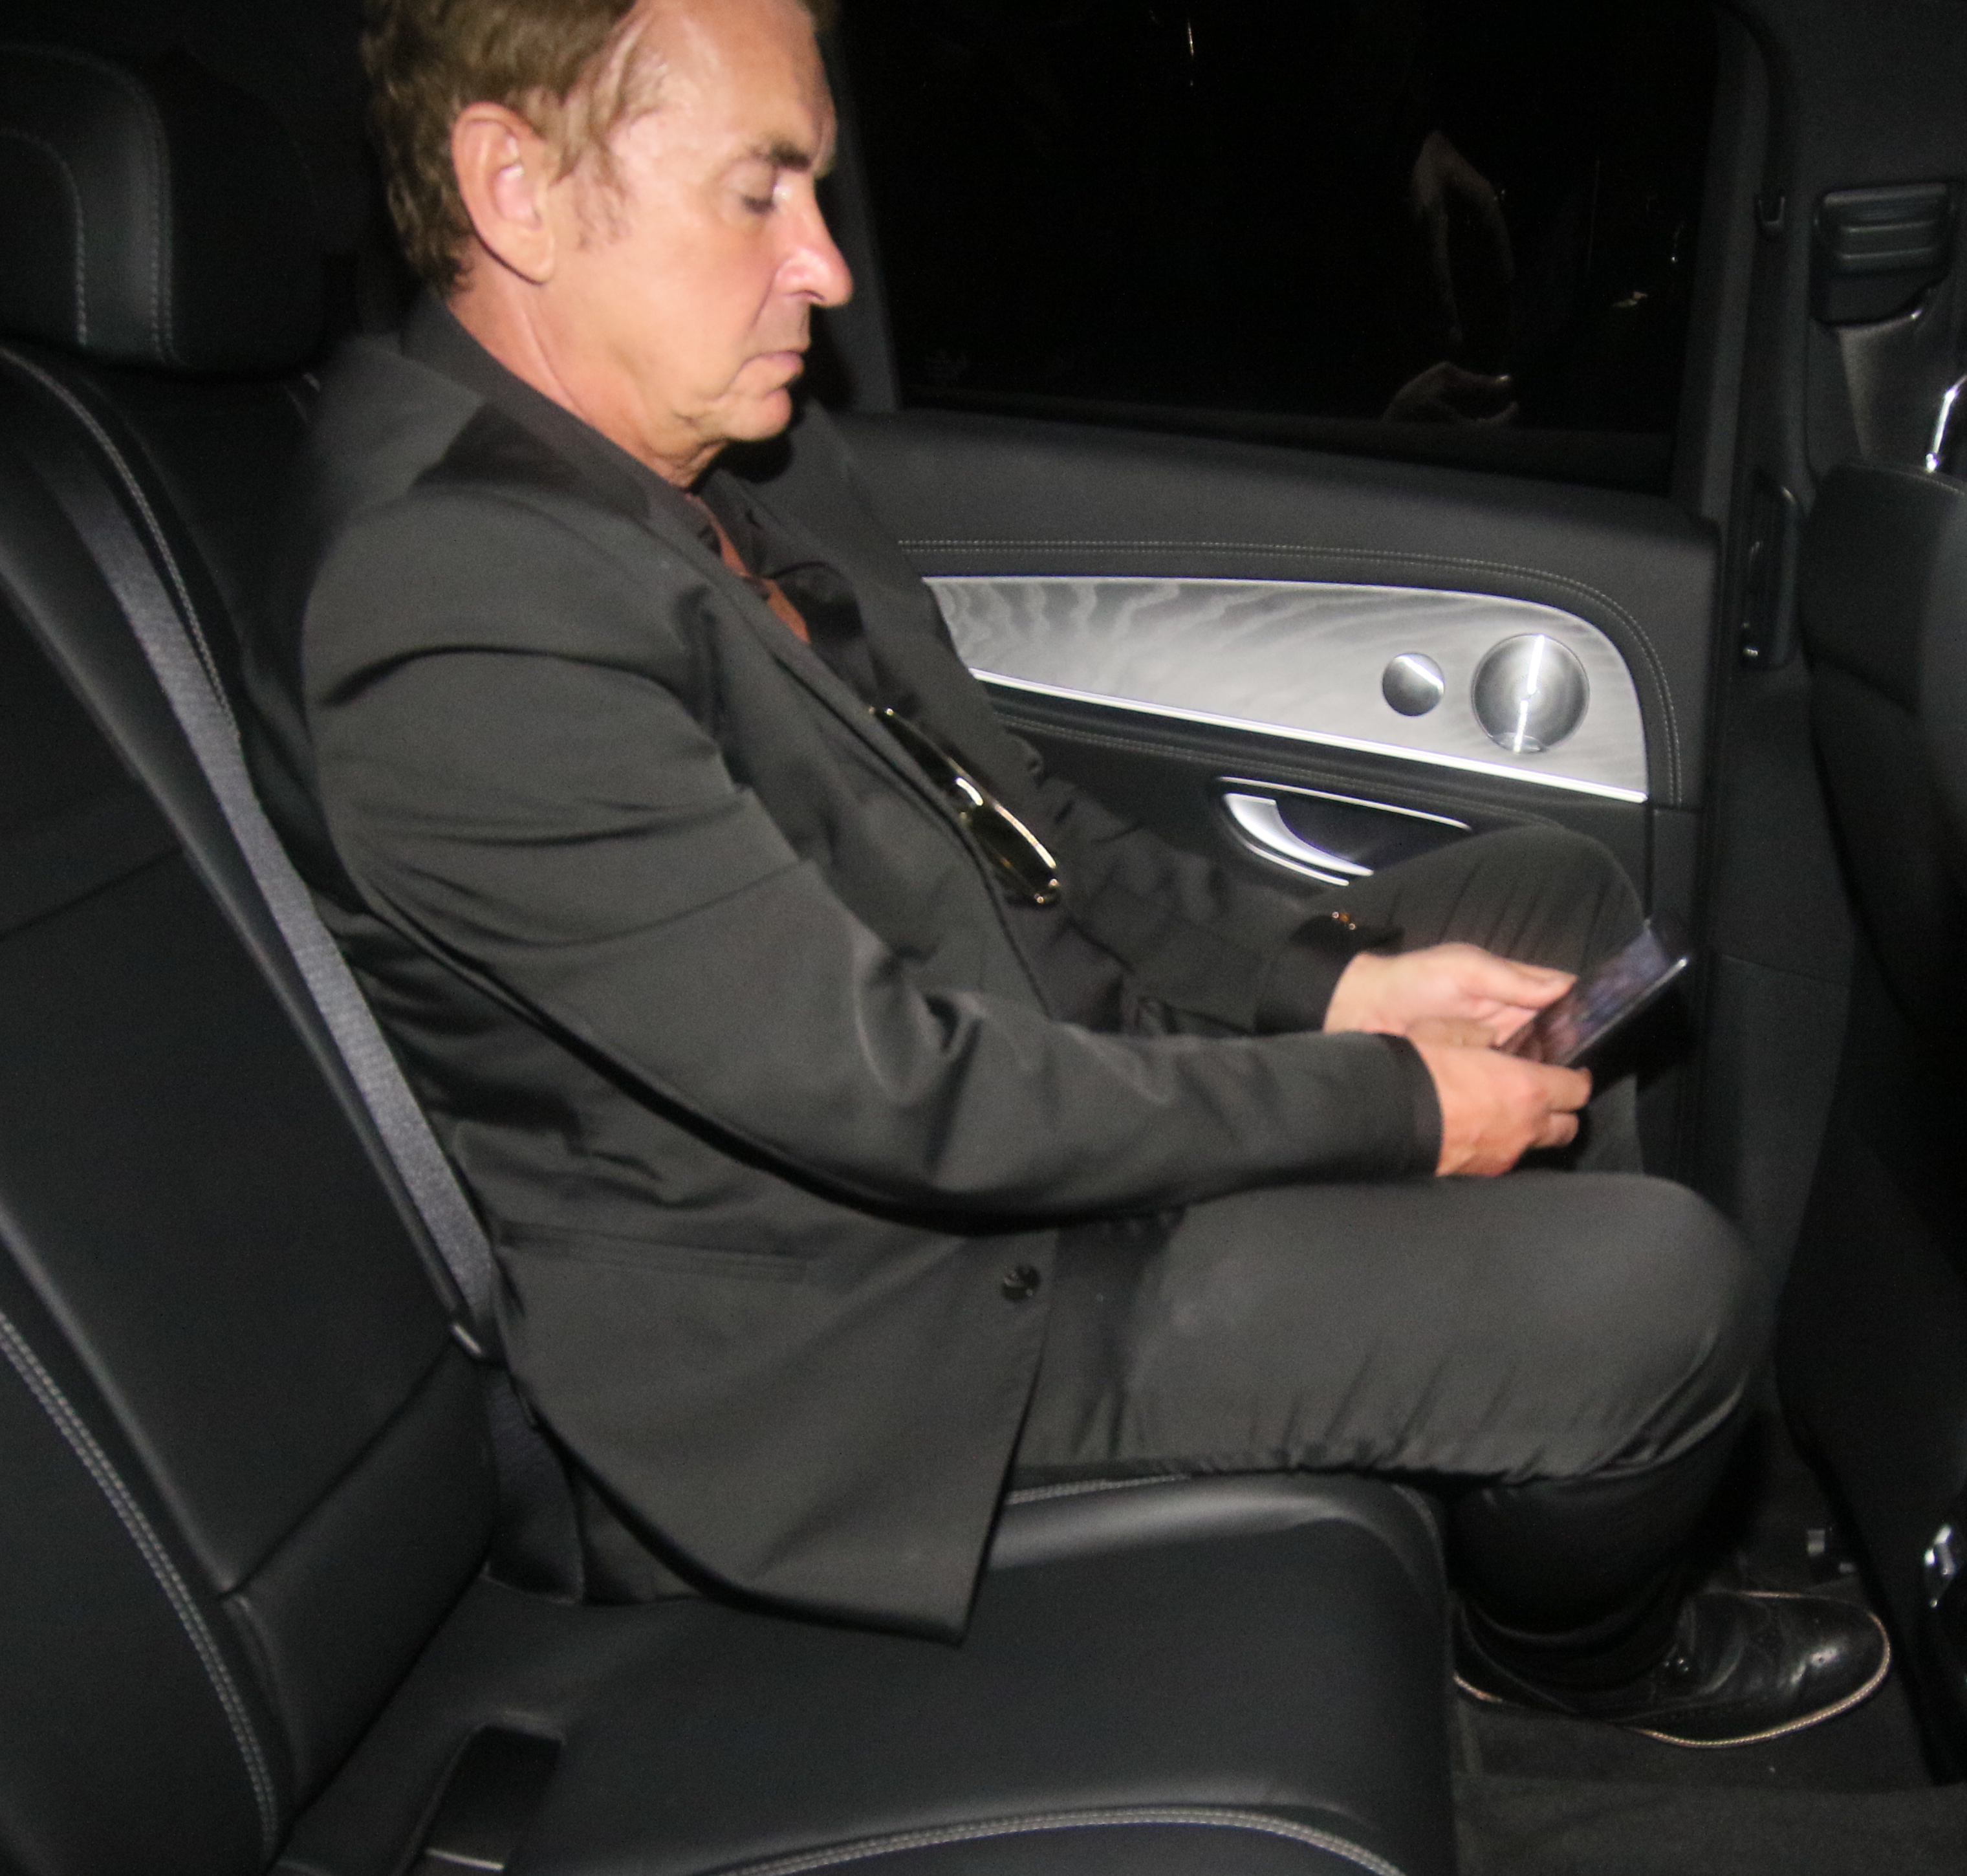 Shane Richie saß auf dem Rücksitz eines Autos an seinem Handy fest